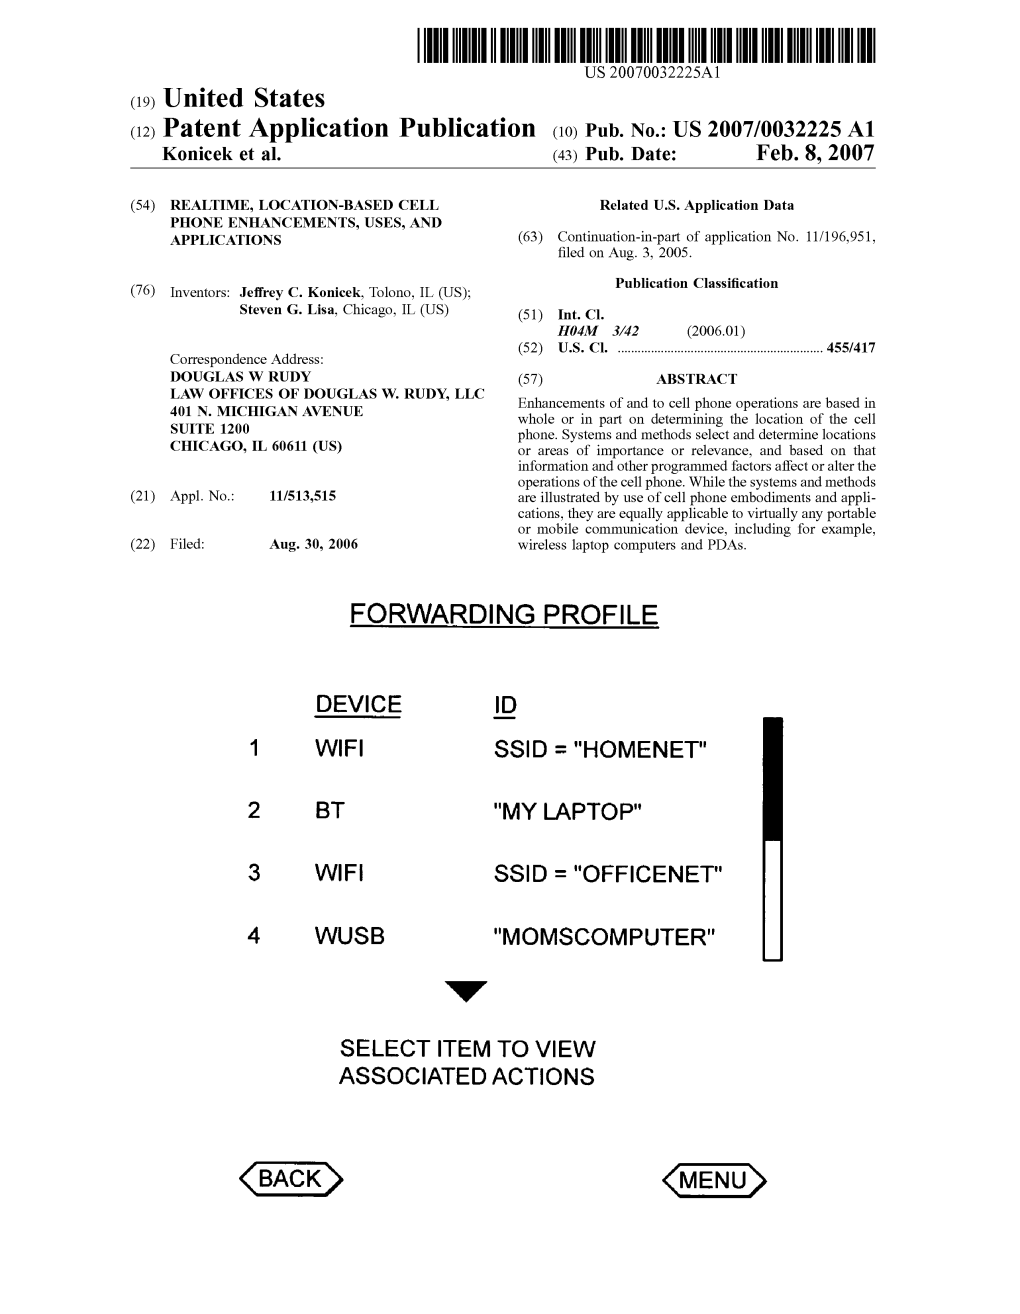 (12) Patent Application Publication (10) Pub. No.: US 2007/0032225A1 Konicek Et Al